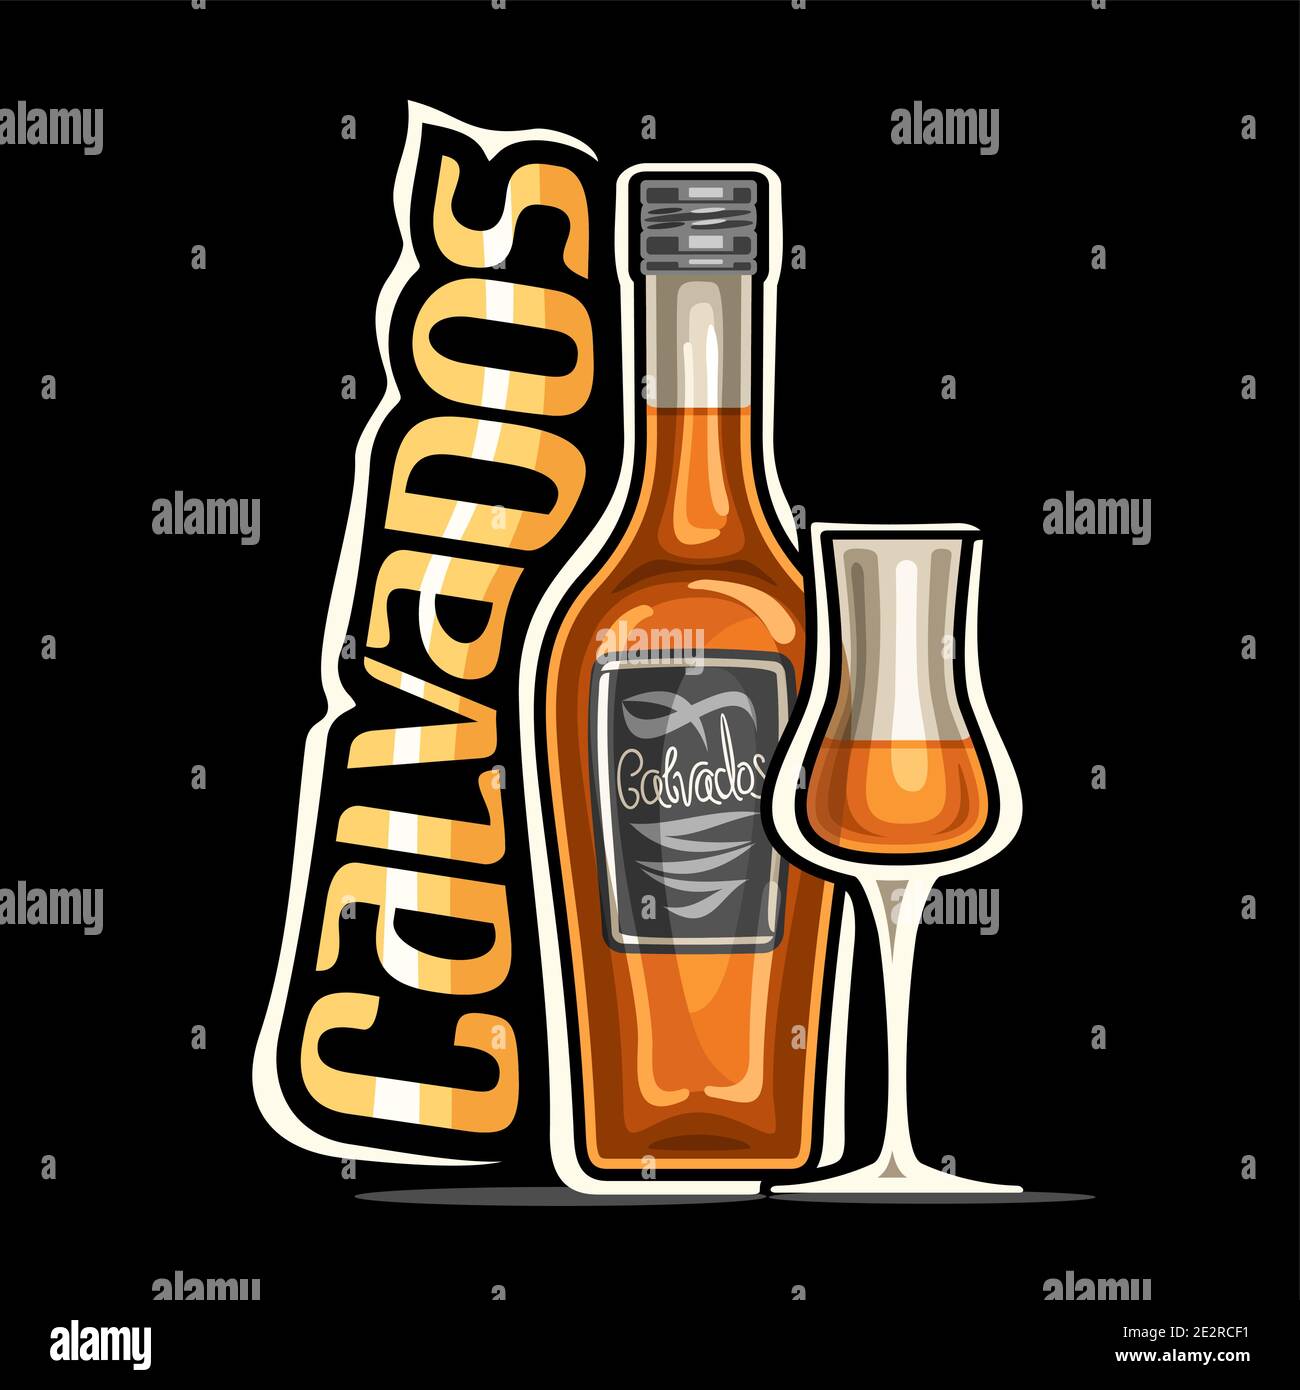 Logo vettoriale per Calvados, illustrazione della bottiglia classica marrone con etichetta decorativa e mezzo vetro pieno cartoon, cartellone con scritta dal design unico Illustrazione Vettoriale